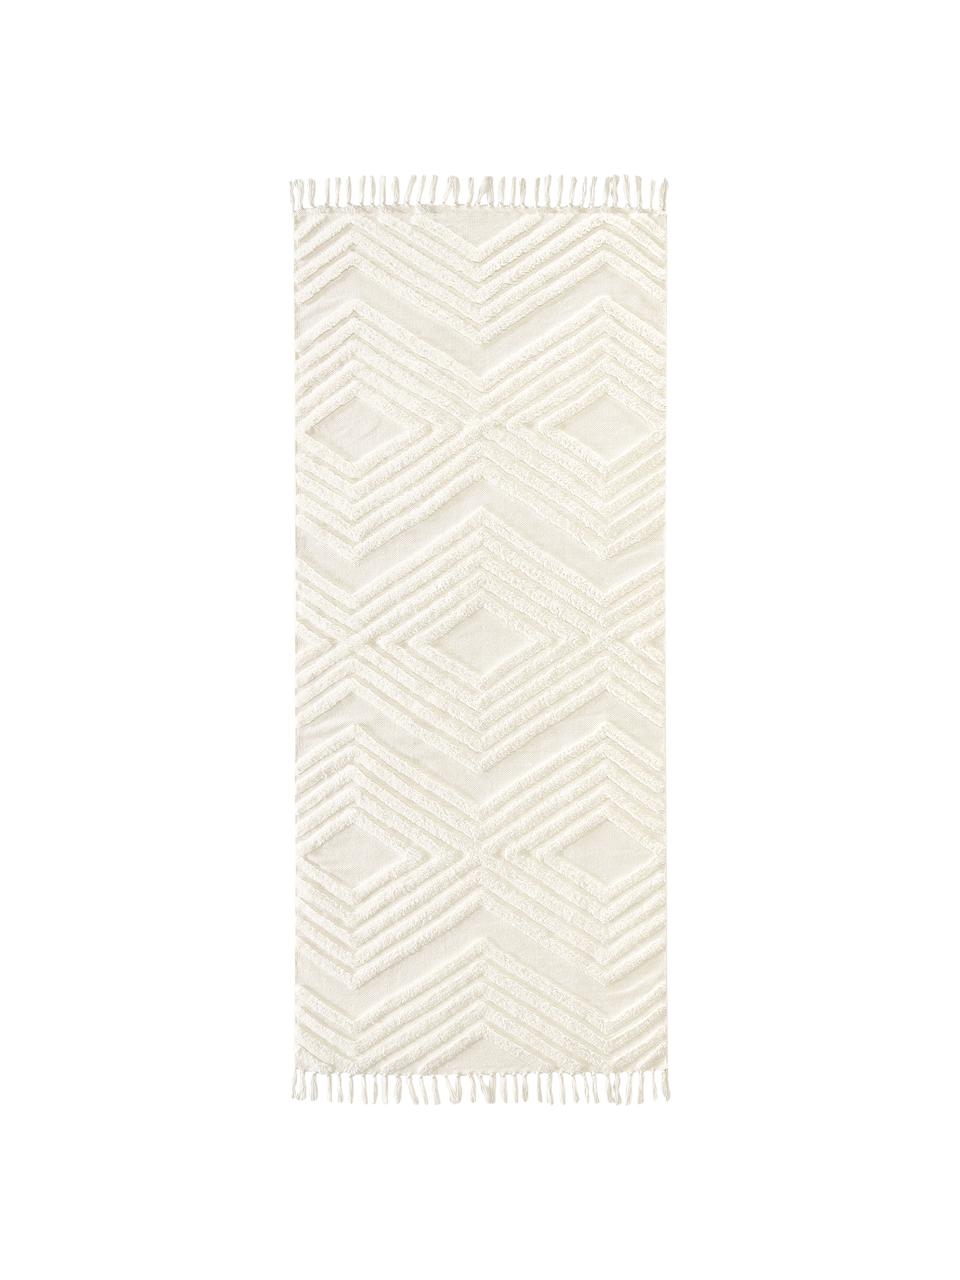 Passatoia in cotone tessuta a mano con struttura in rilievo Ziggy, 100% cotone, Bianco crema, Larg. 80 x Lung. 250 cm